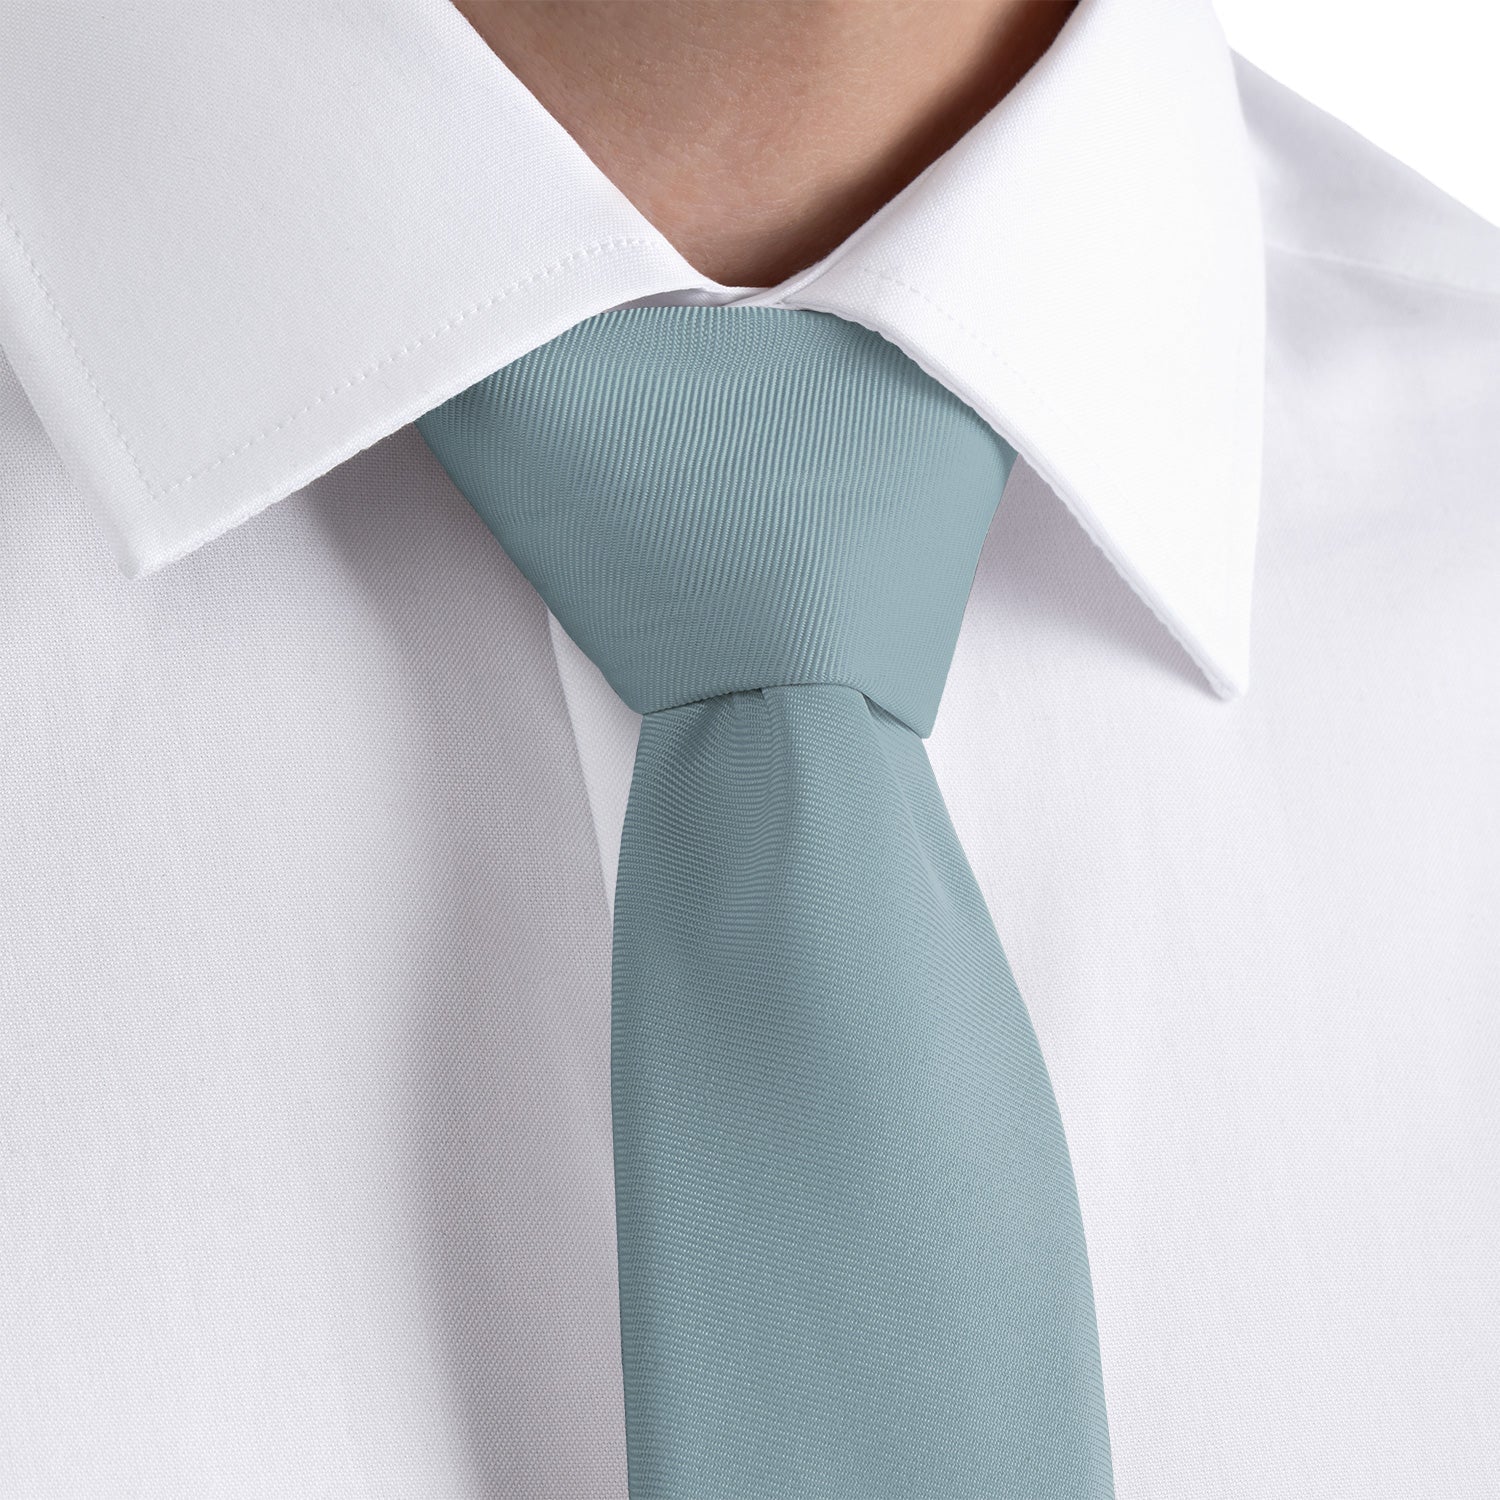 Azazie Moody Blue Necktie - Rolled - Knotty Tie Co.